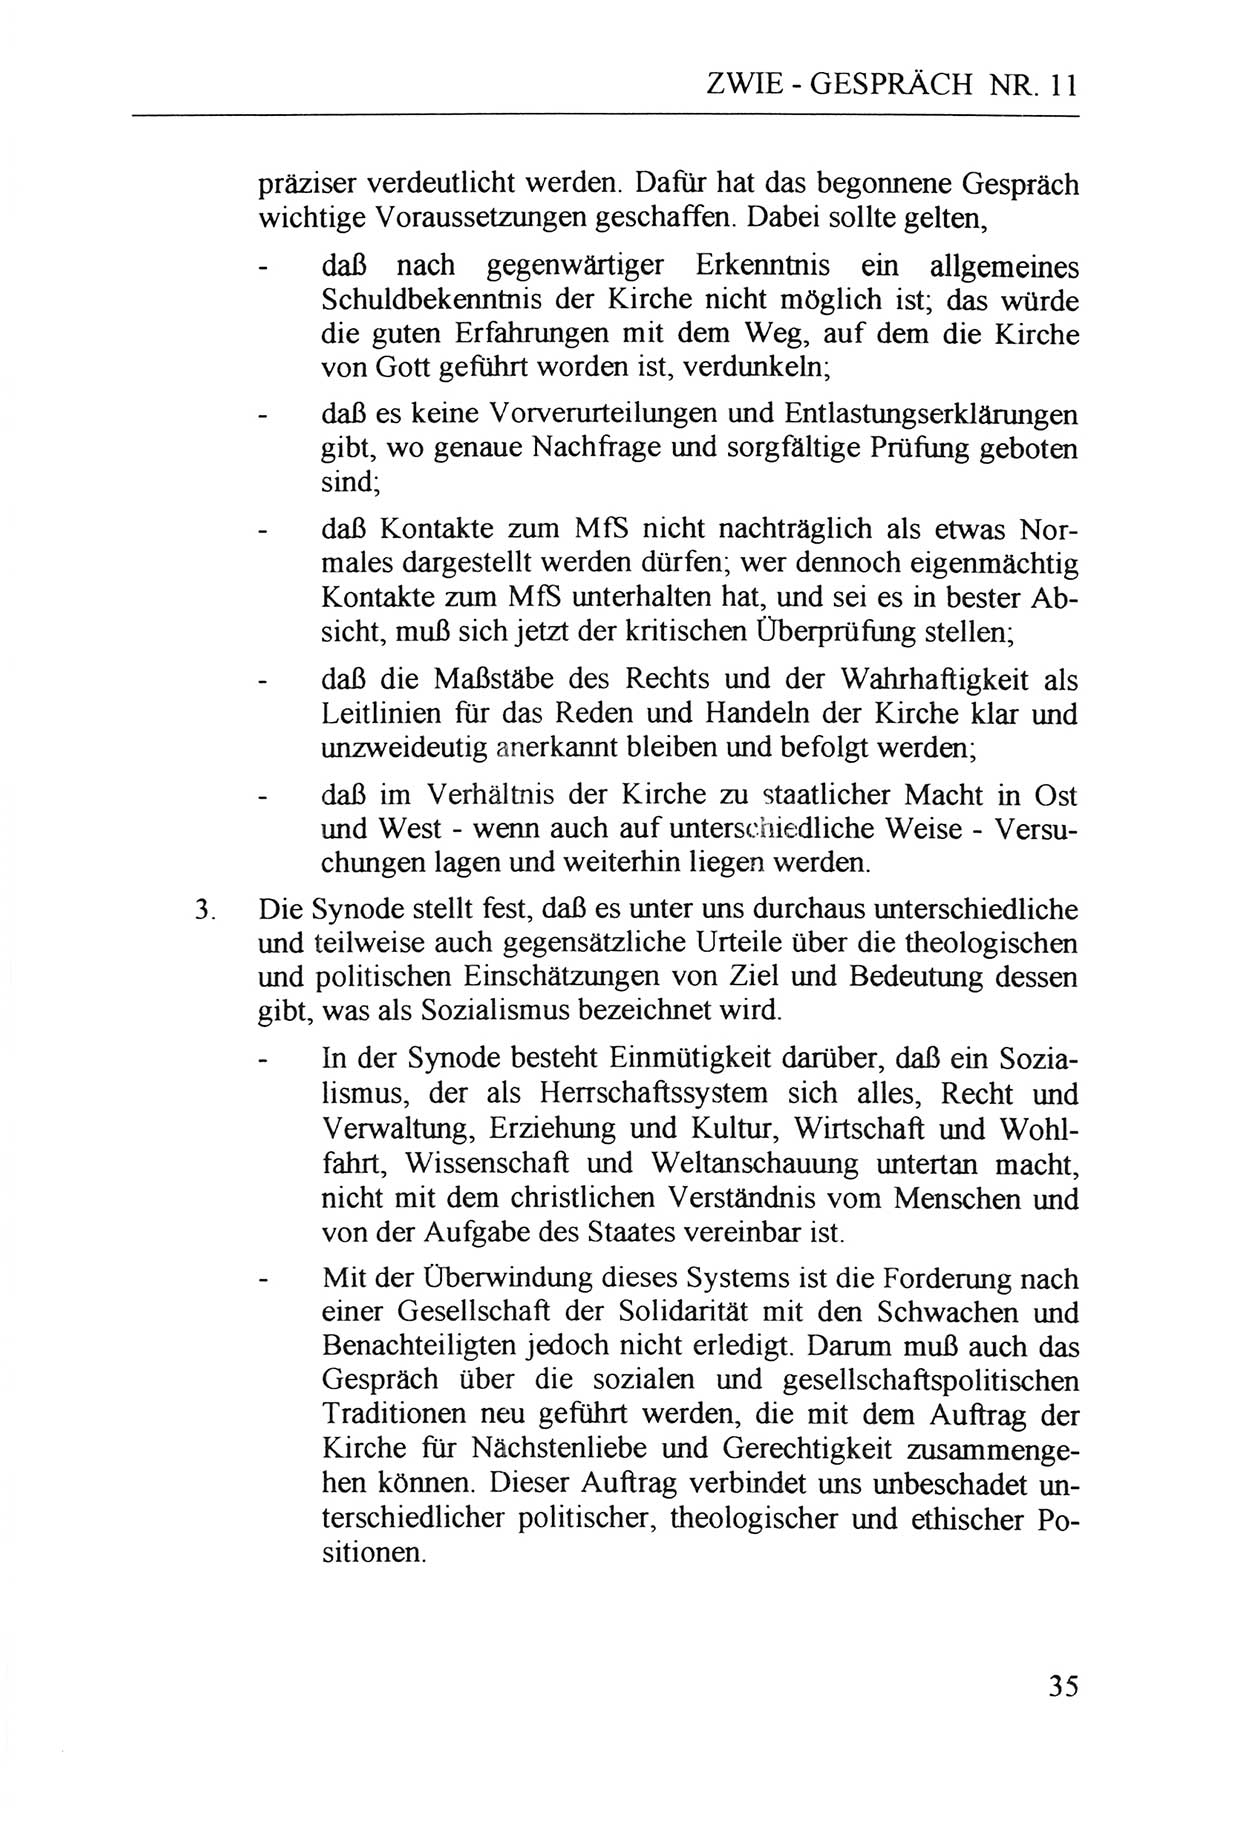 Zwie-Gespräch, Beiträge zur Aufarbeitung der Staatssicherheits-Vergangenheit [Deutsche Demokratische Republik (DDR)], Ausgabe Nr. 11, Berlin 1992, Seite 35 (Zwie-Gespr. Ausg. 11 1992, S. 35)